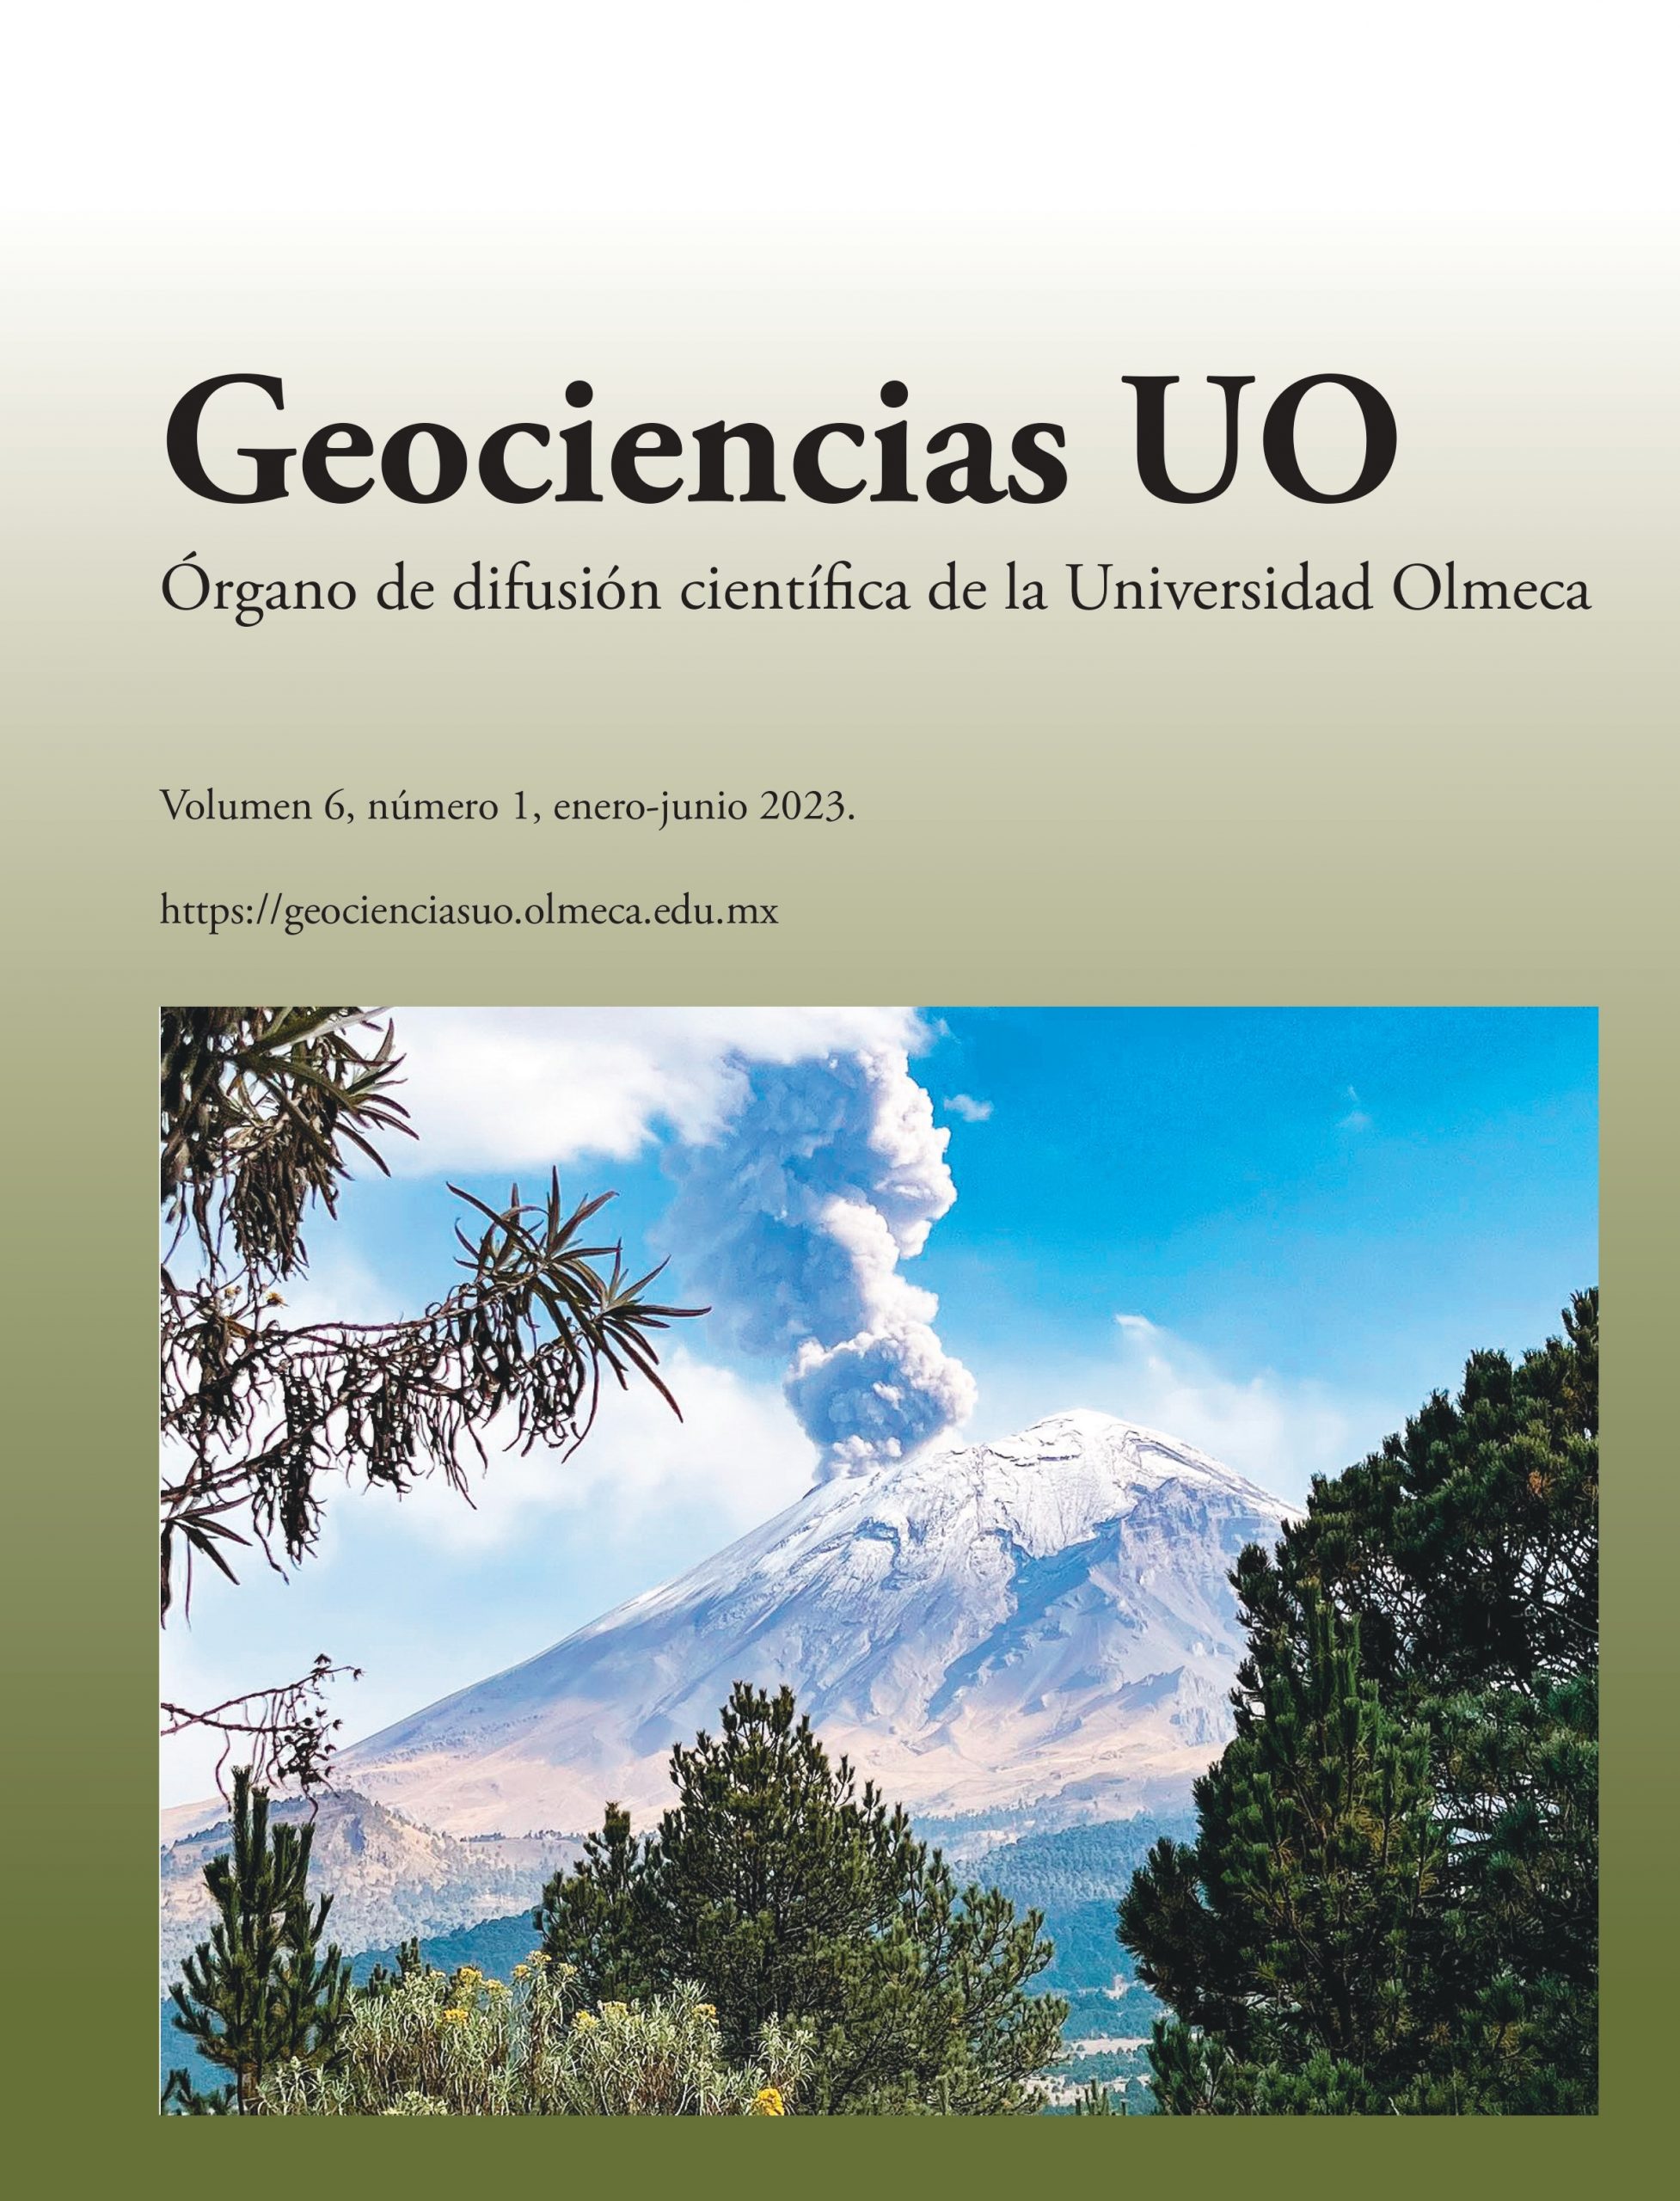 Geociencias UO Año 6 Vol 6 Núm 1 Ejemplar 11